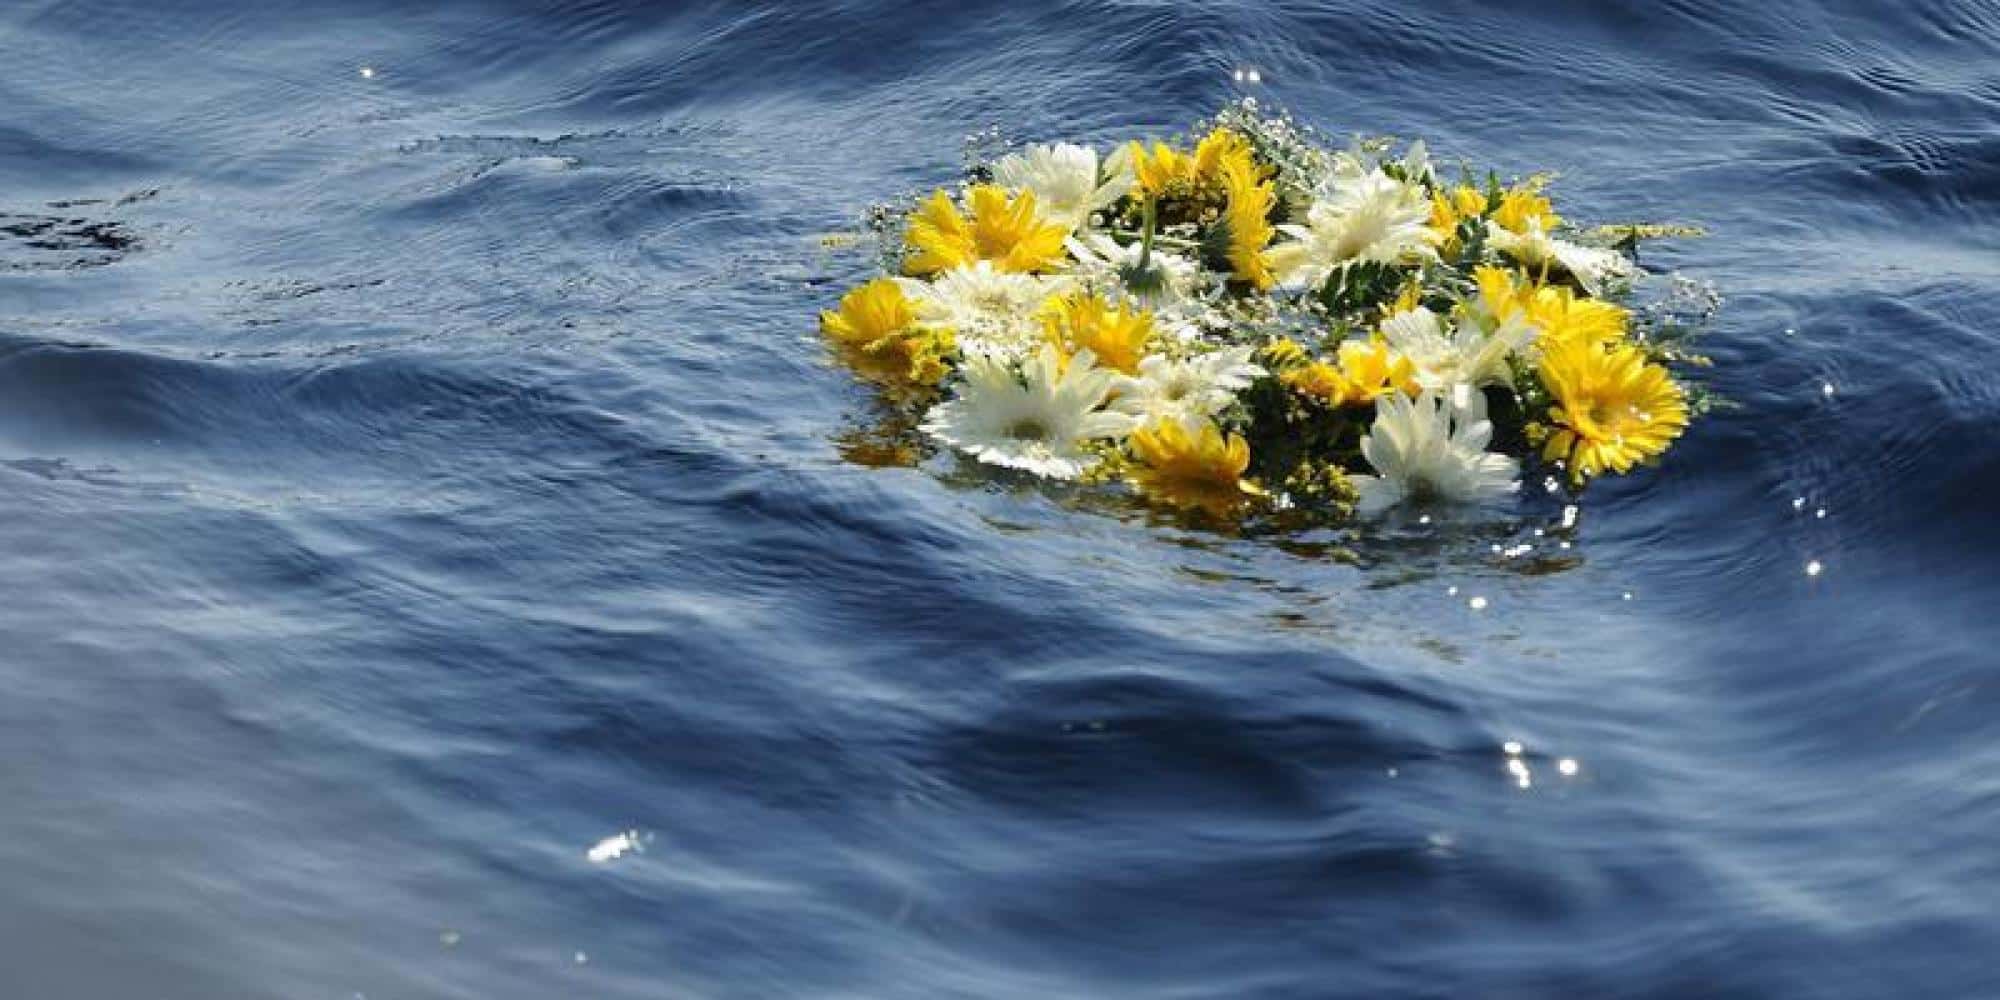 Migranti, soccorso barcone: a bordo otto cadaveri, tra le vittime tre donne di cui una incinta